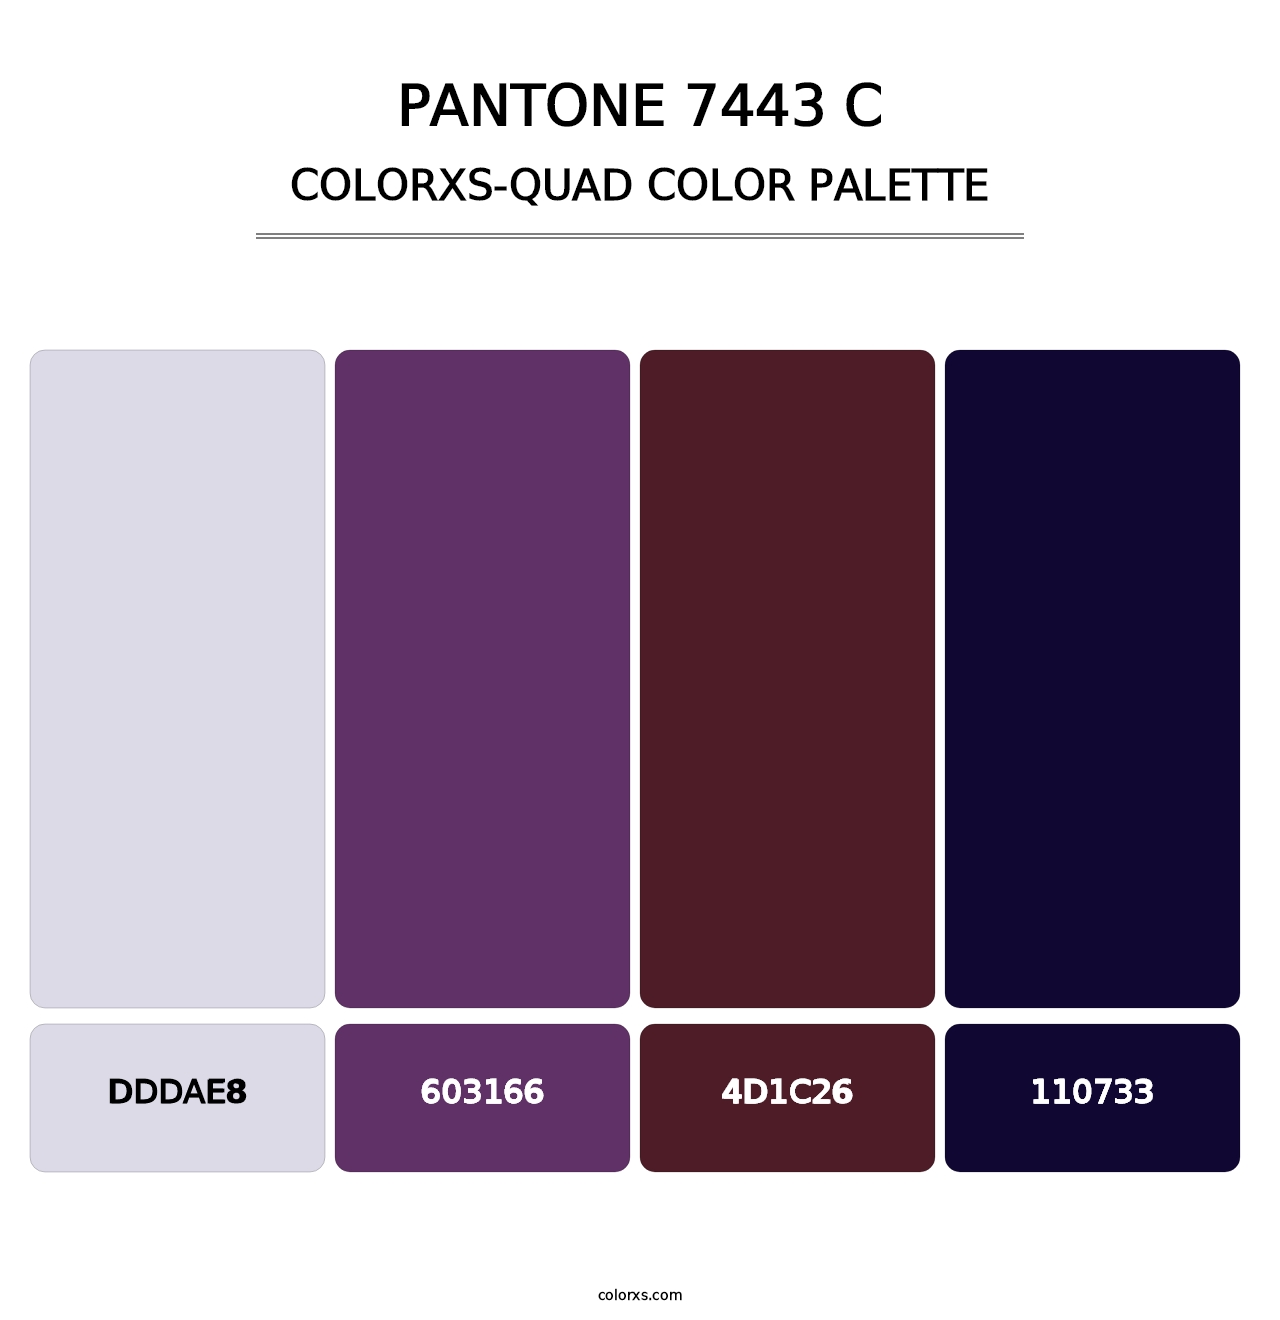 PANTONE 7443 C - Colorxs Quad Palette